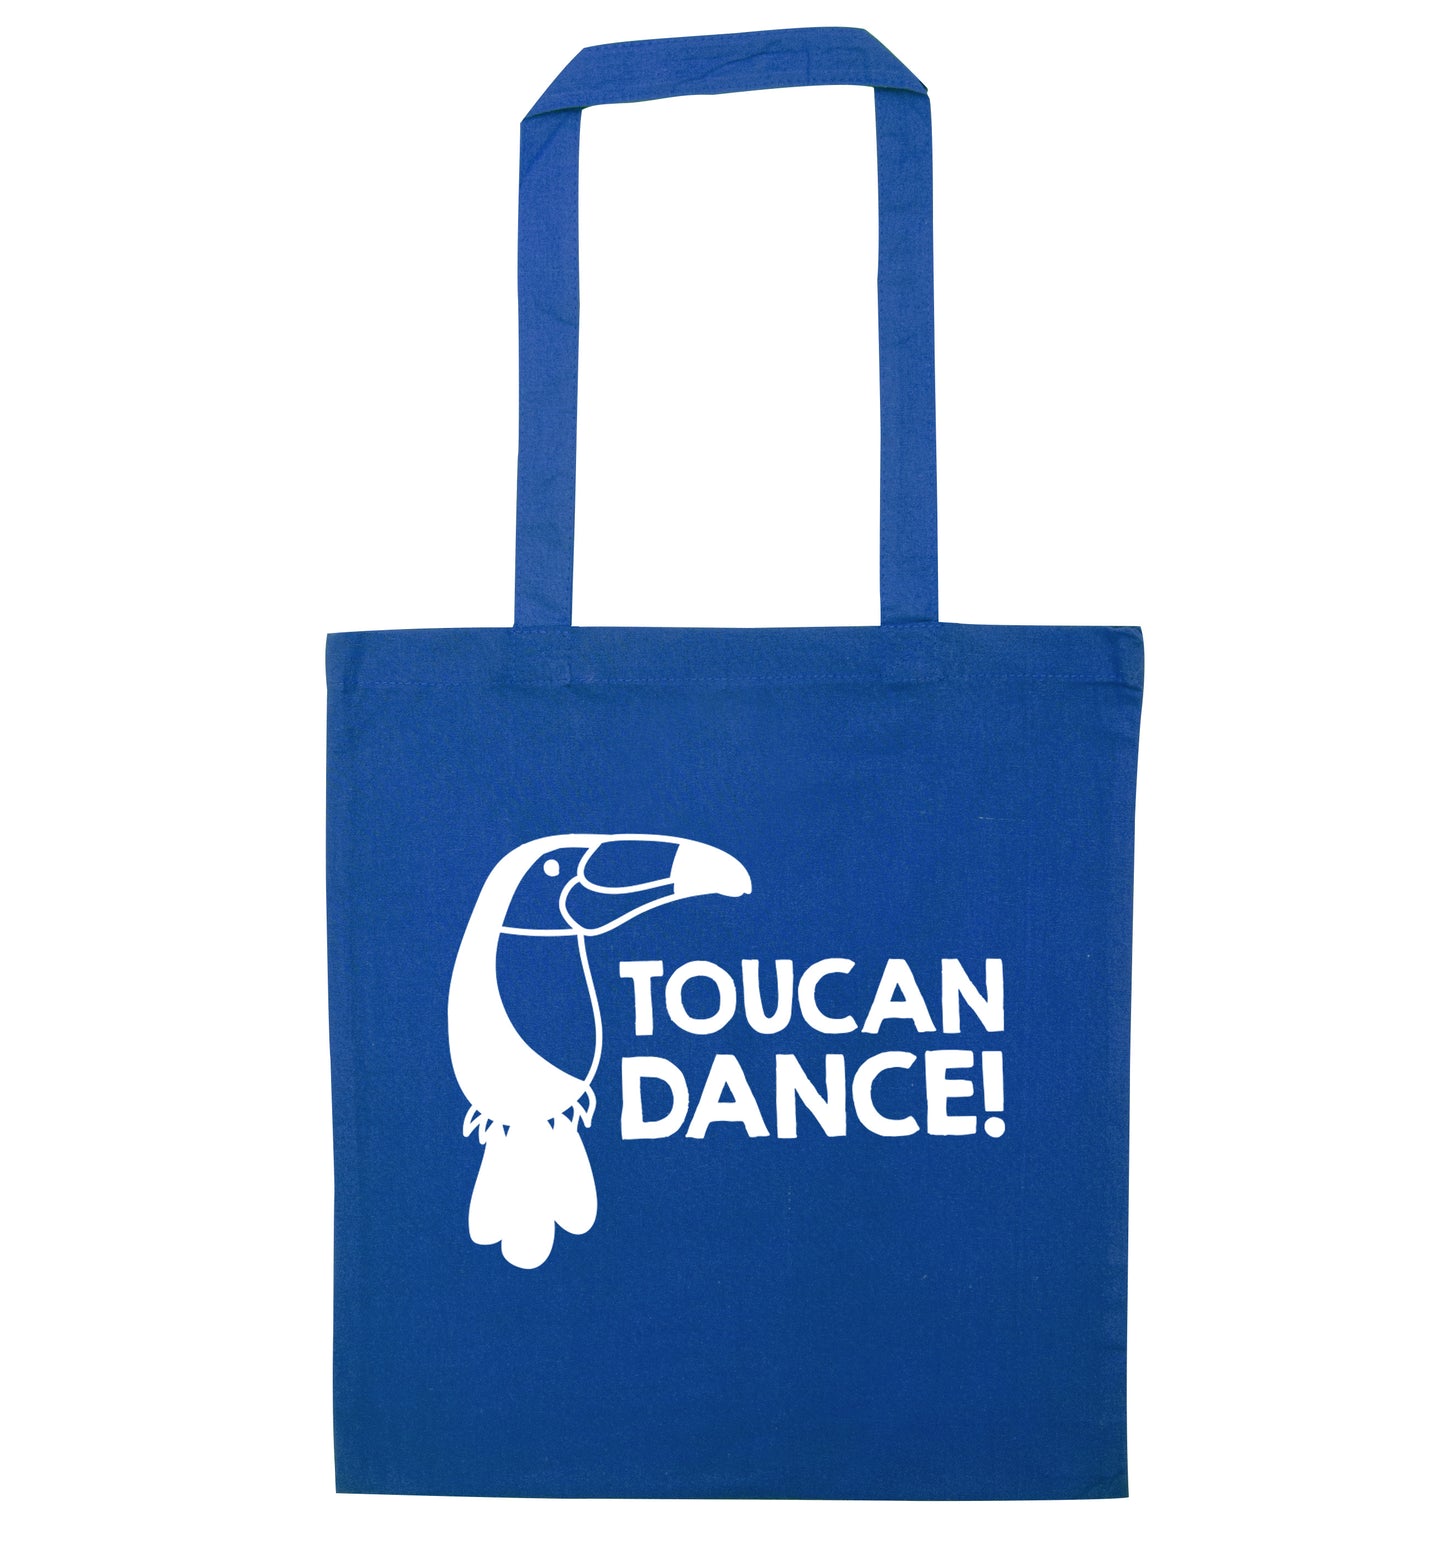 Toucan dance blue tote bag